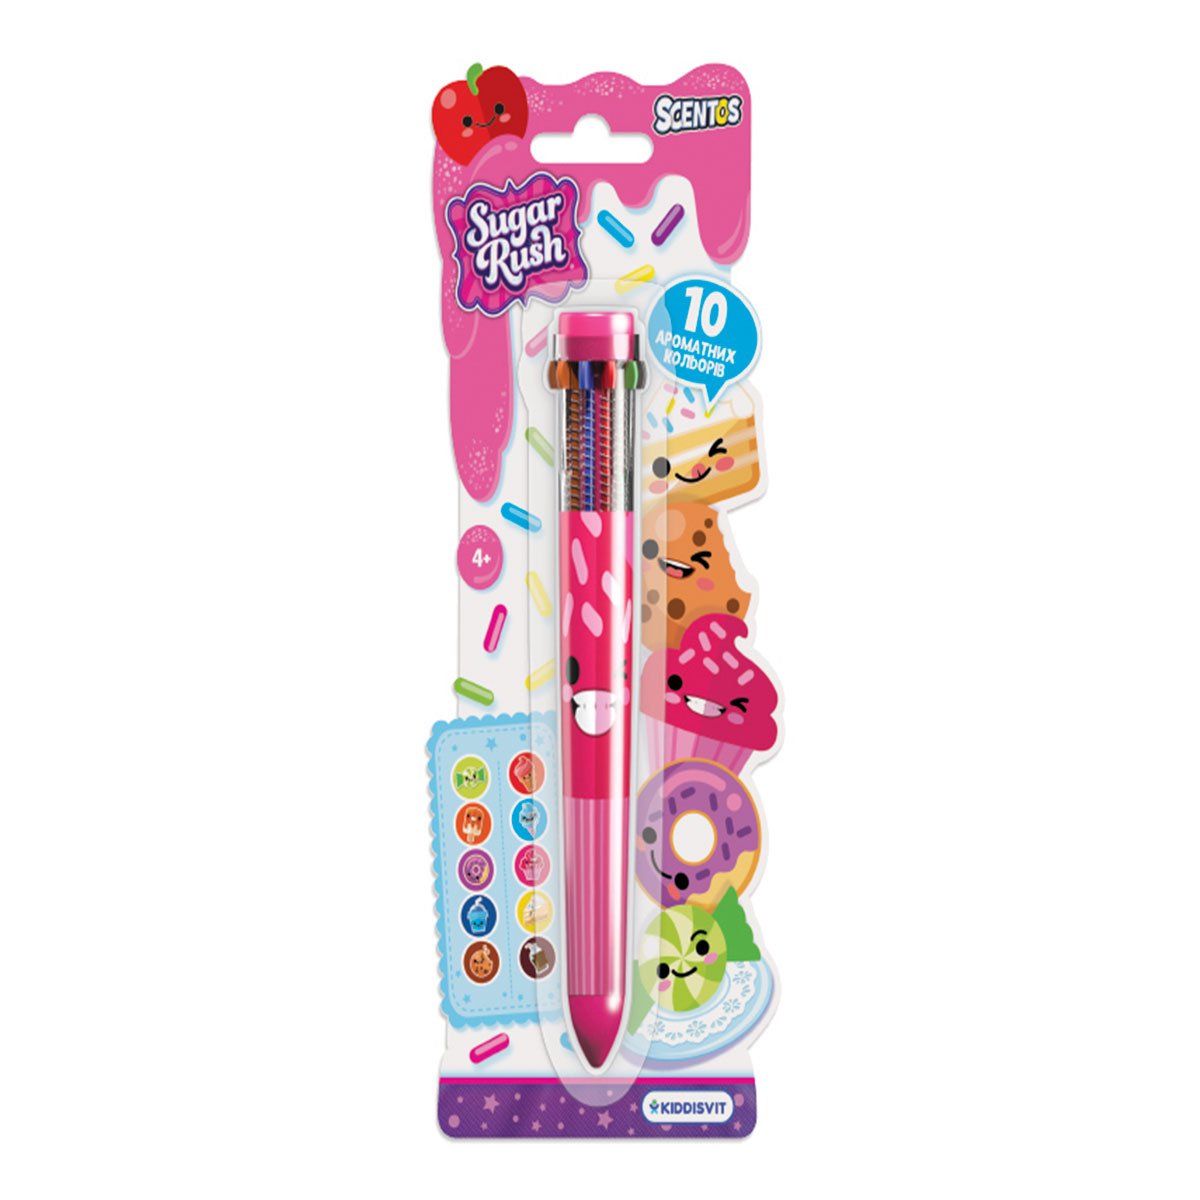 Многоцветная ароматная шариковая ручка Scentos Sugar Rush Феерическое настроение, 10 цветов, розовый корпус (31021) - фото 1